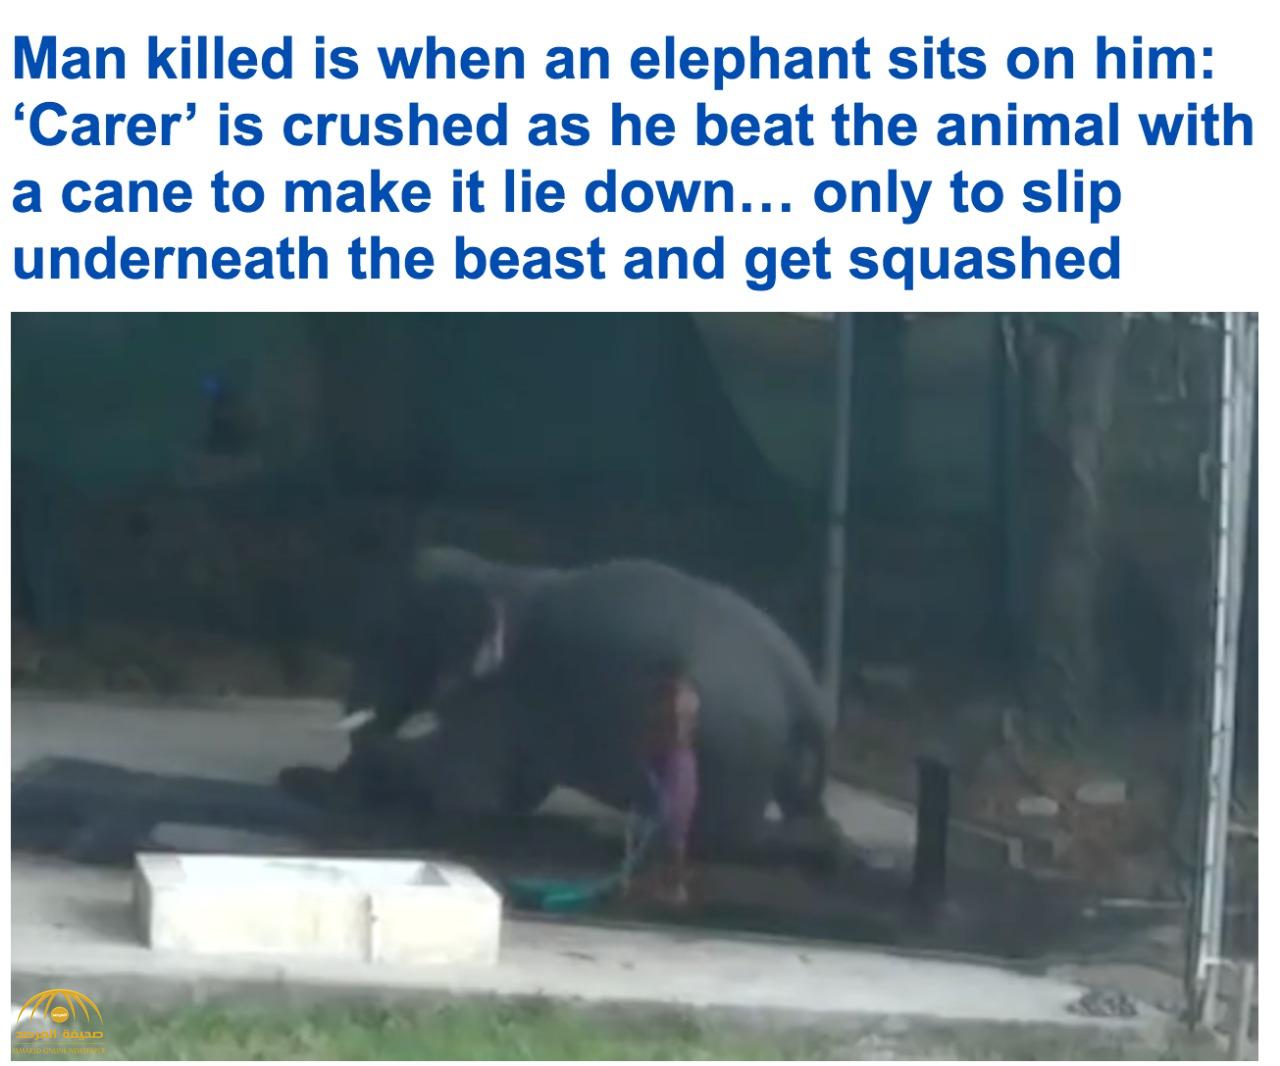 بعدما ضربه بعصا غليظة... شاهد : فيل ضخم ينتقم من مدربه بطريقة خاطفة لم يتوقعها !